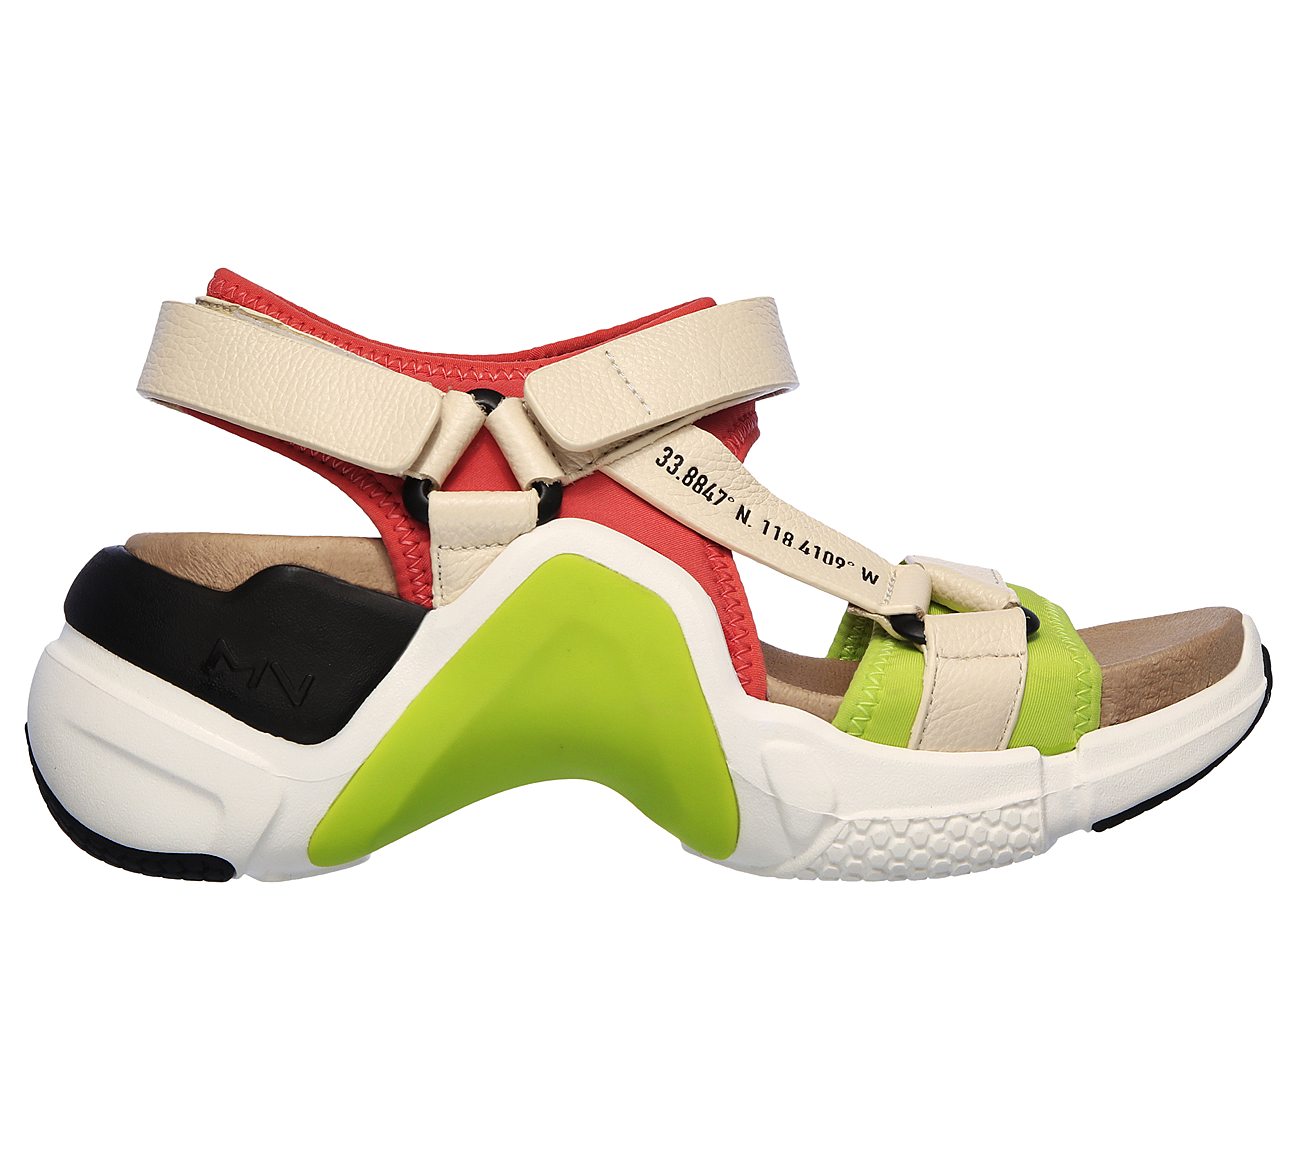 NEO BLOCK - DIDI, WHITE/MULTI Footwear Right View